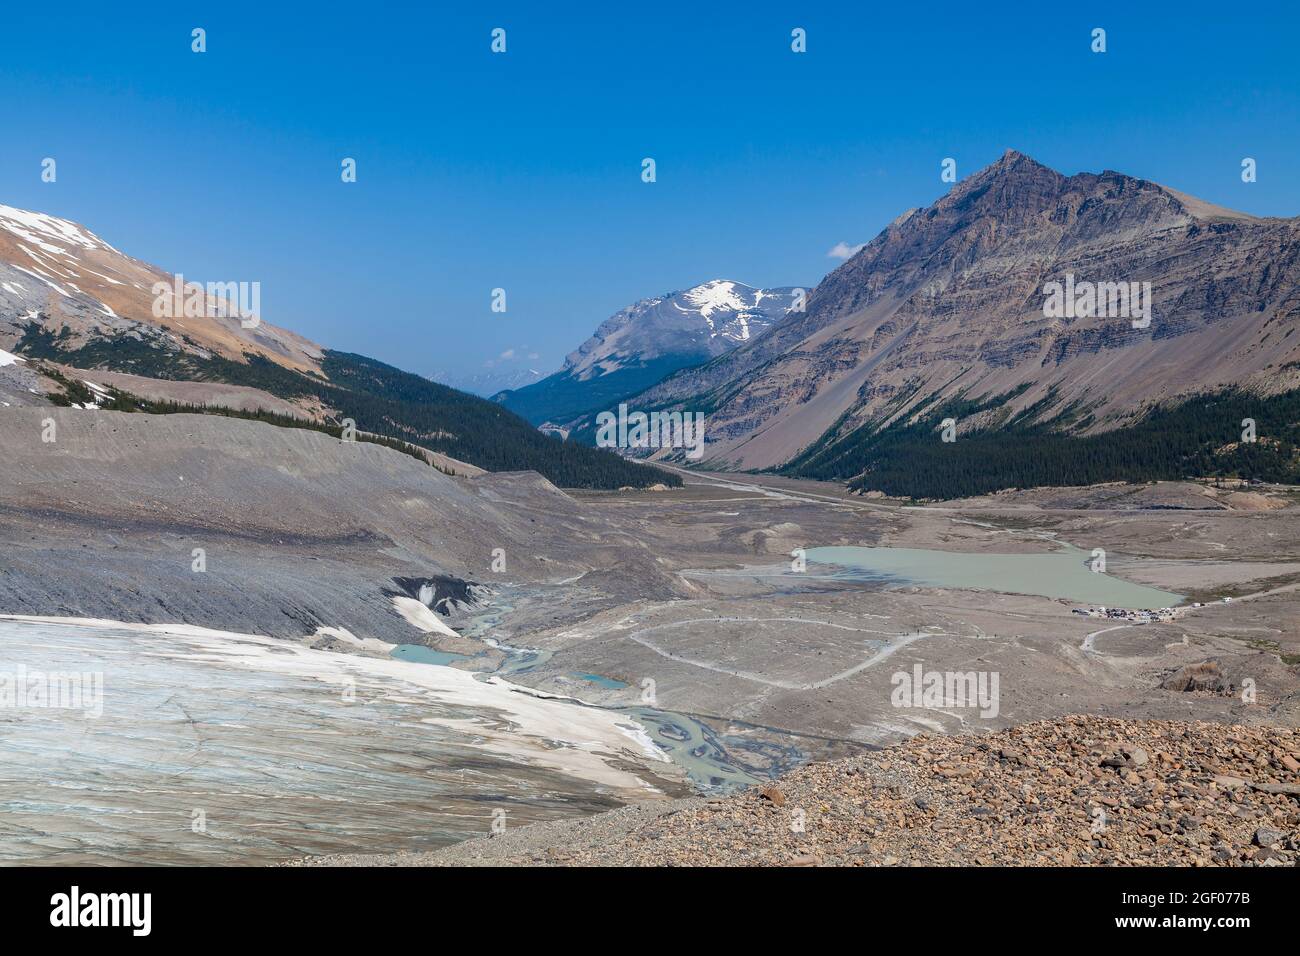 Blick auf den Athabasca-Gletscher in der Columbia Icefields-Region Kanadas. Stockfoto